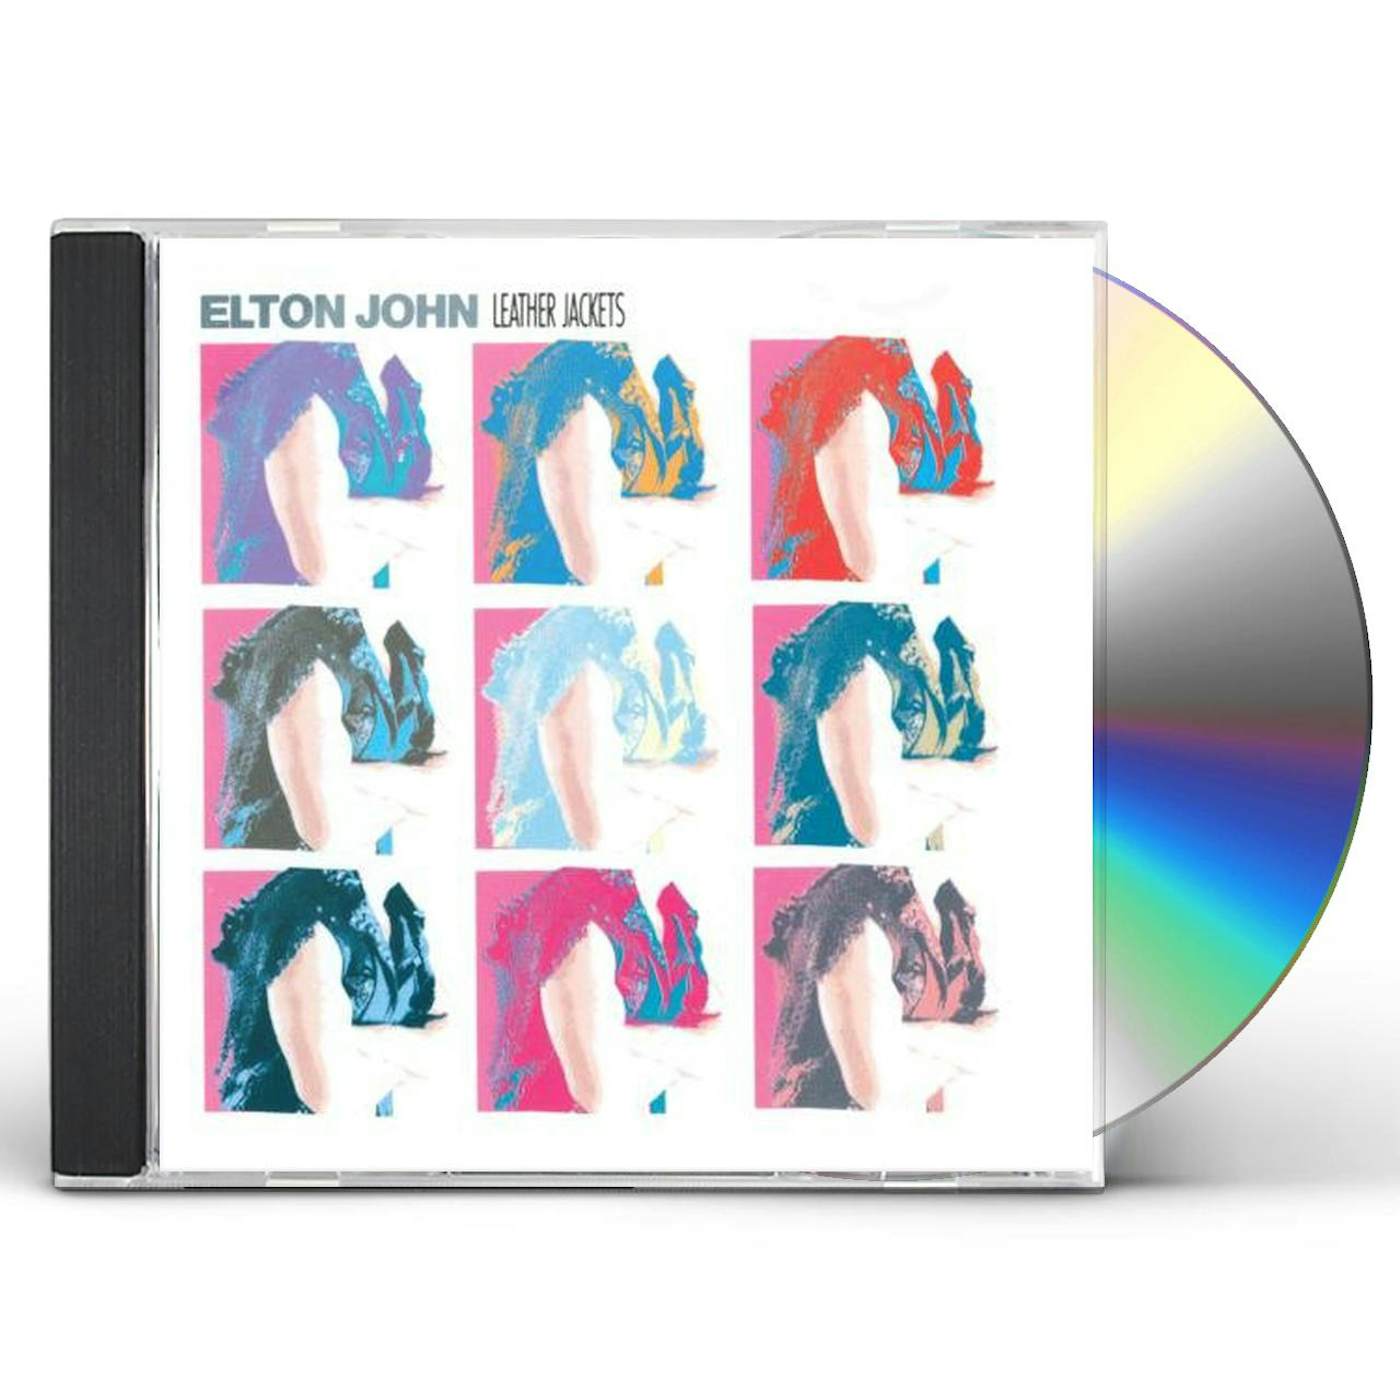 Elton John LEATHER JACKETS CD